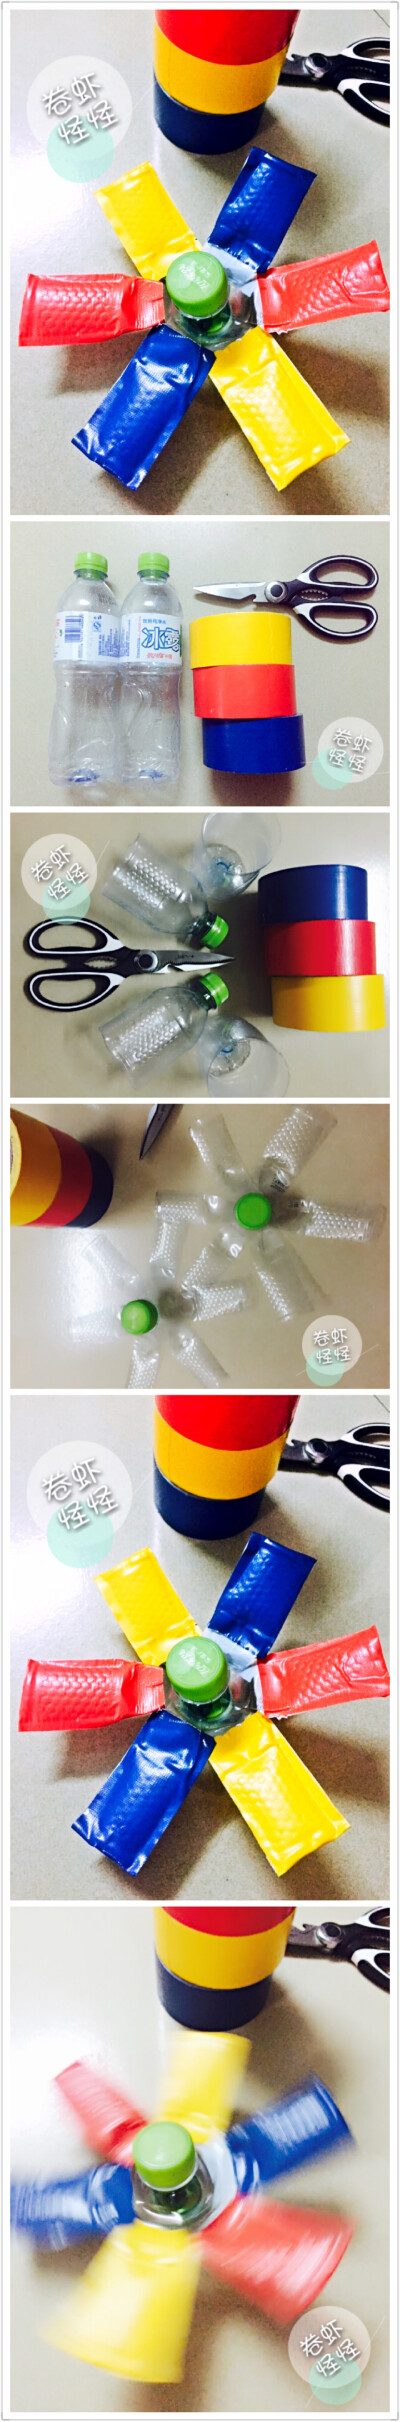 废物利用#矿泉水空瓶制作的彩色陀螺 旋转陀螺.孩子玩具